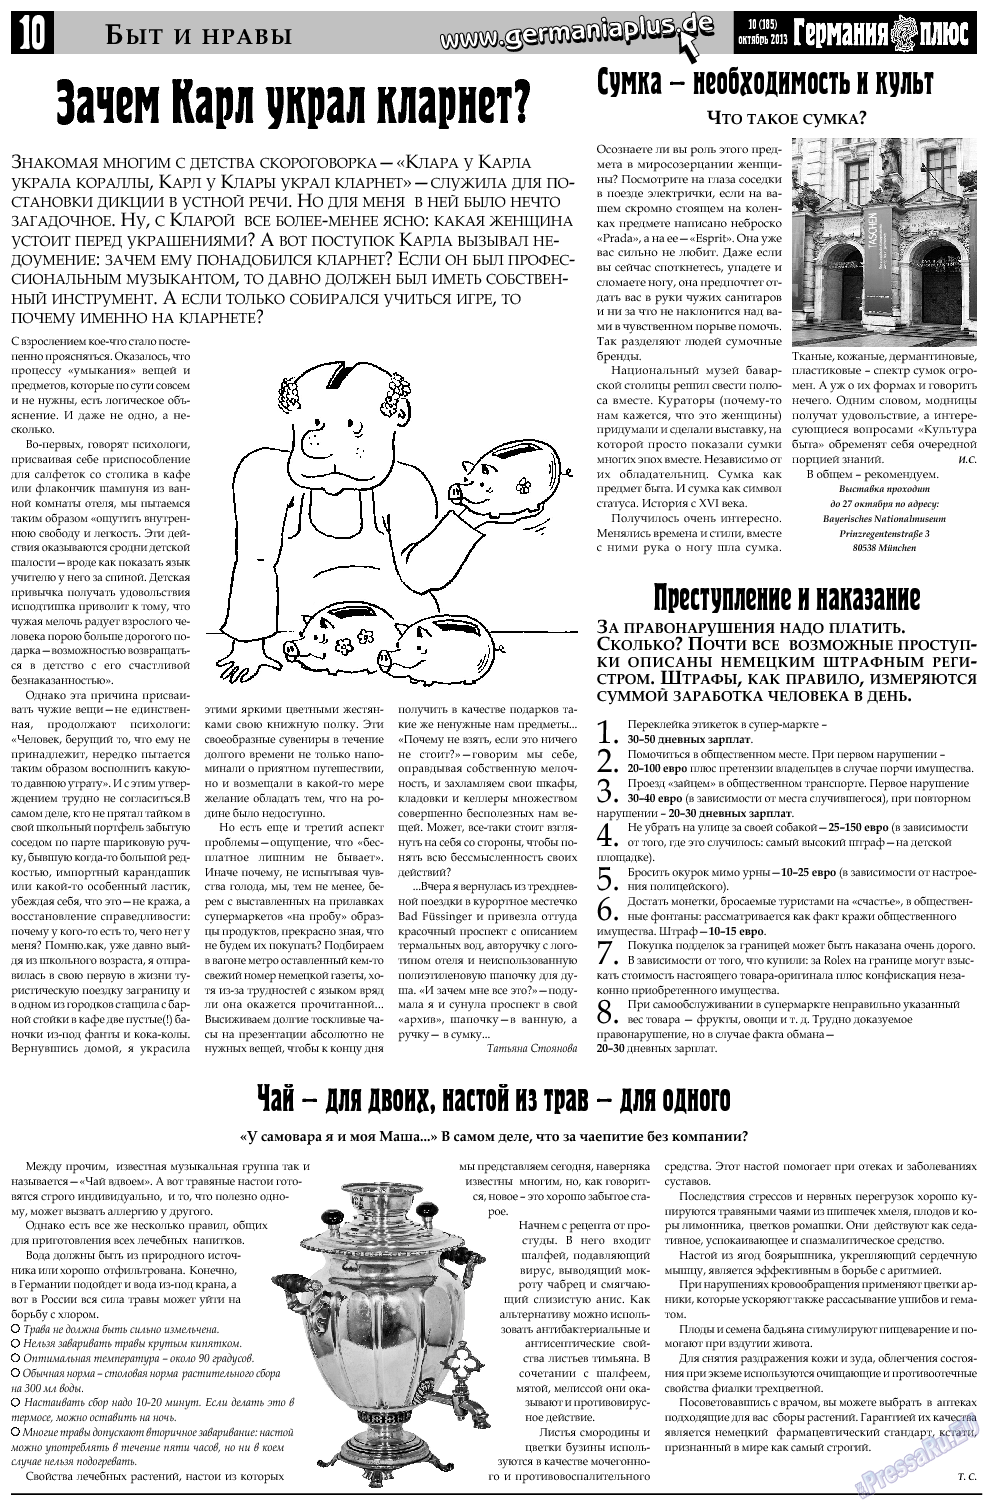 Германия плюс, газета. 2013 №10 стр.10